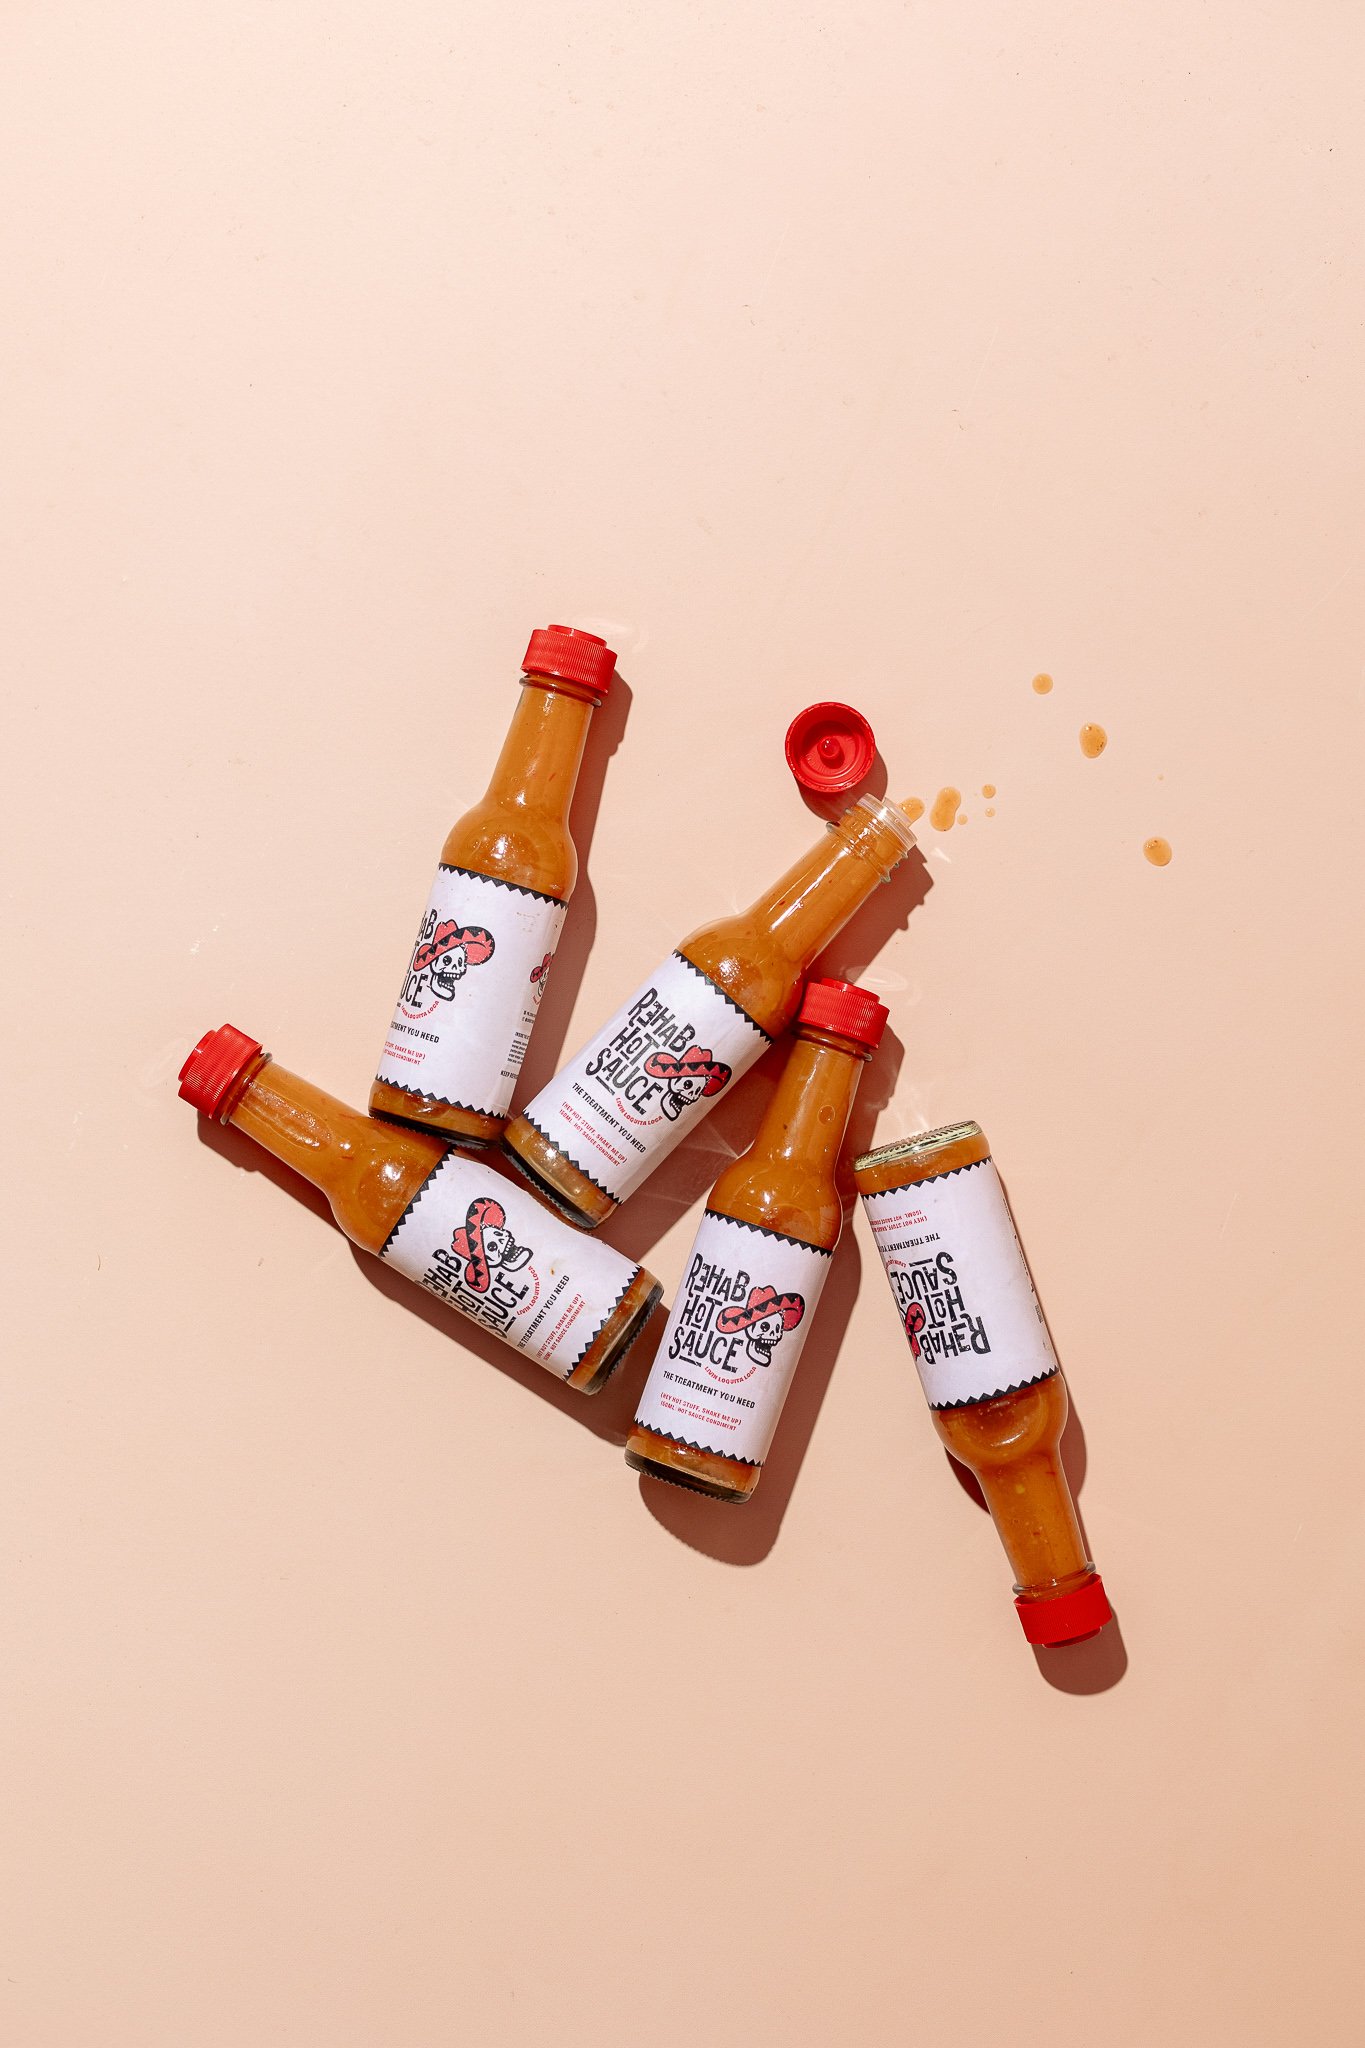 Canberra food photographer - hot sauce spills